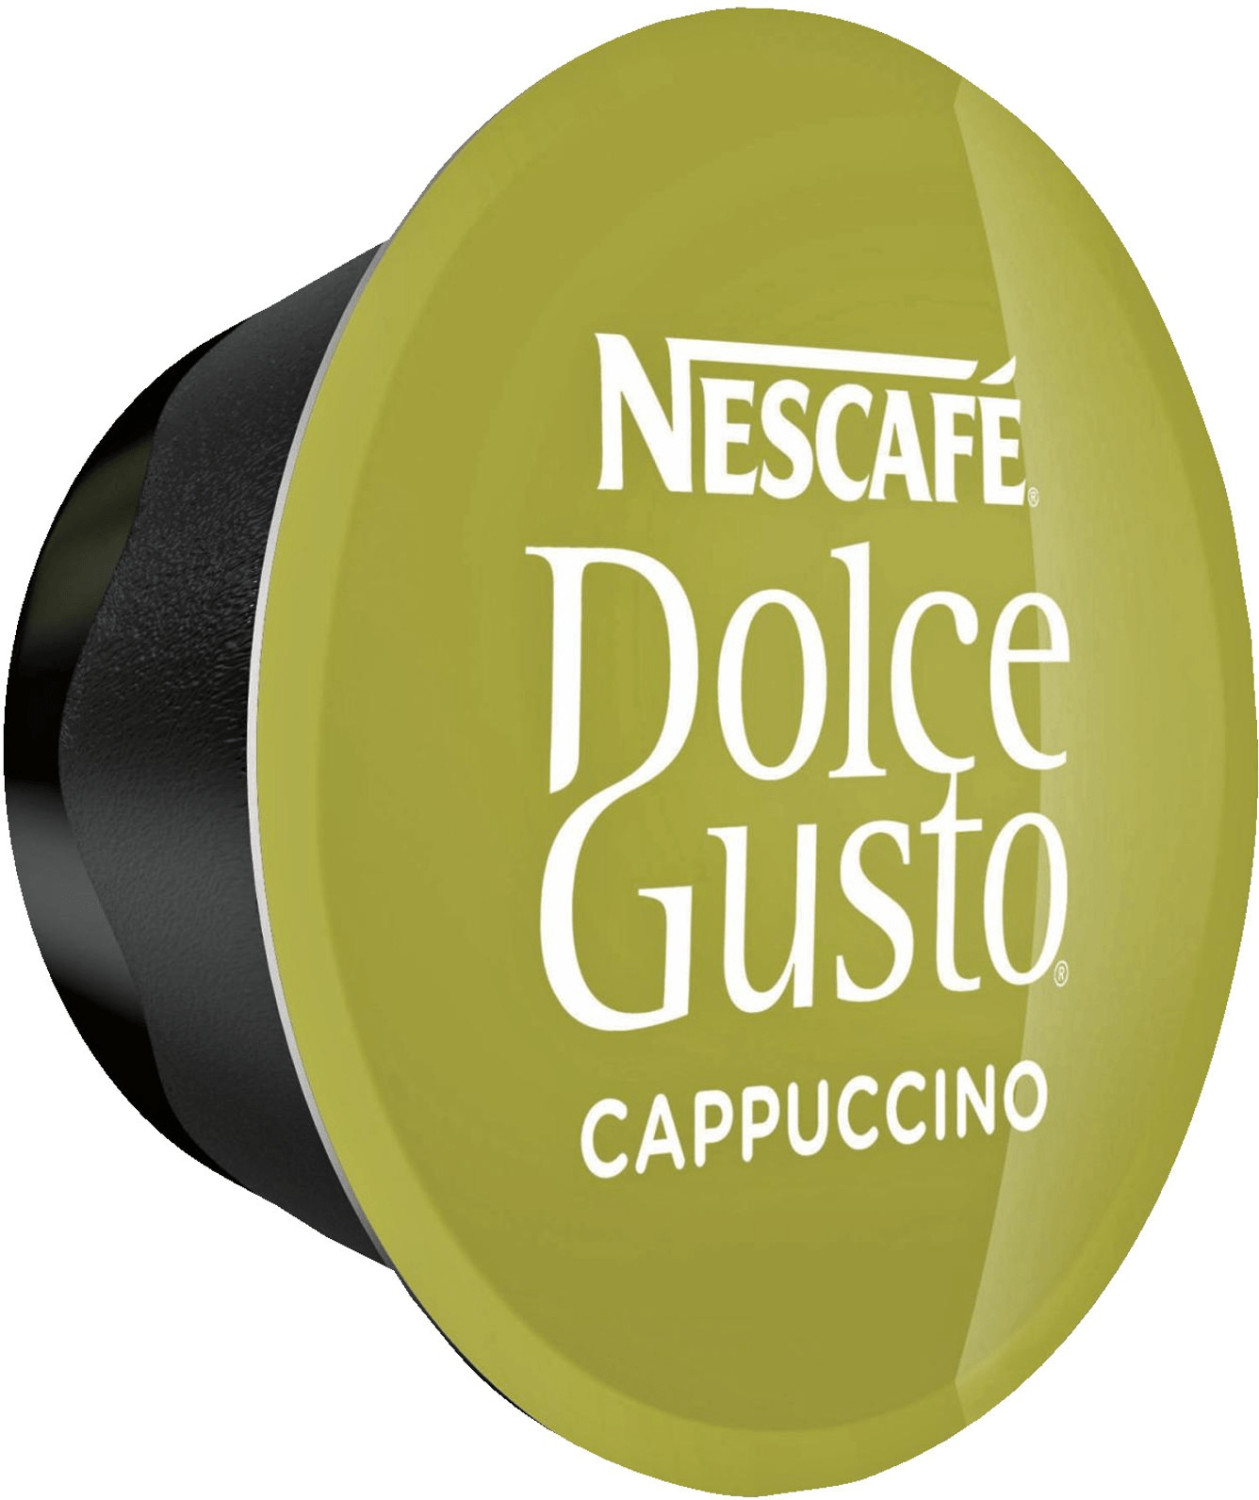 Cappuccino Dolce gusto: Cápsulas